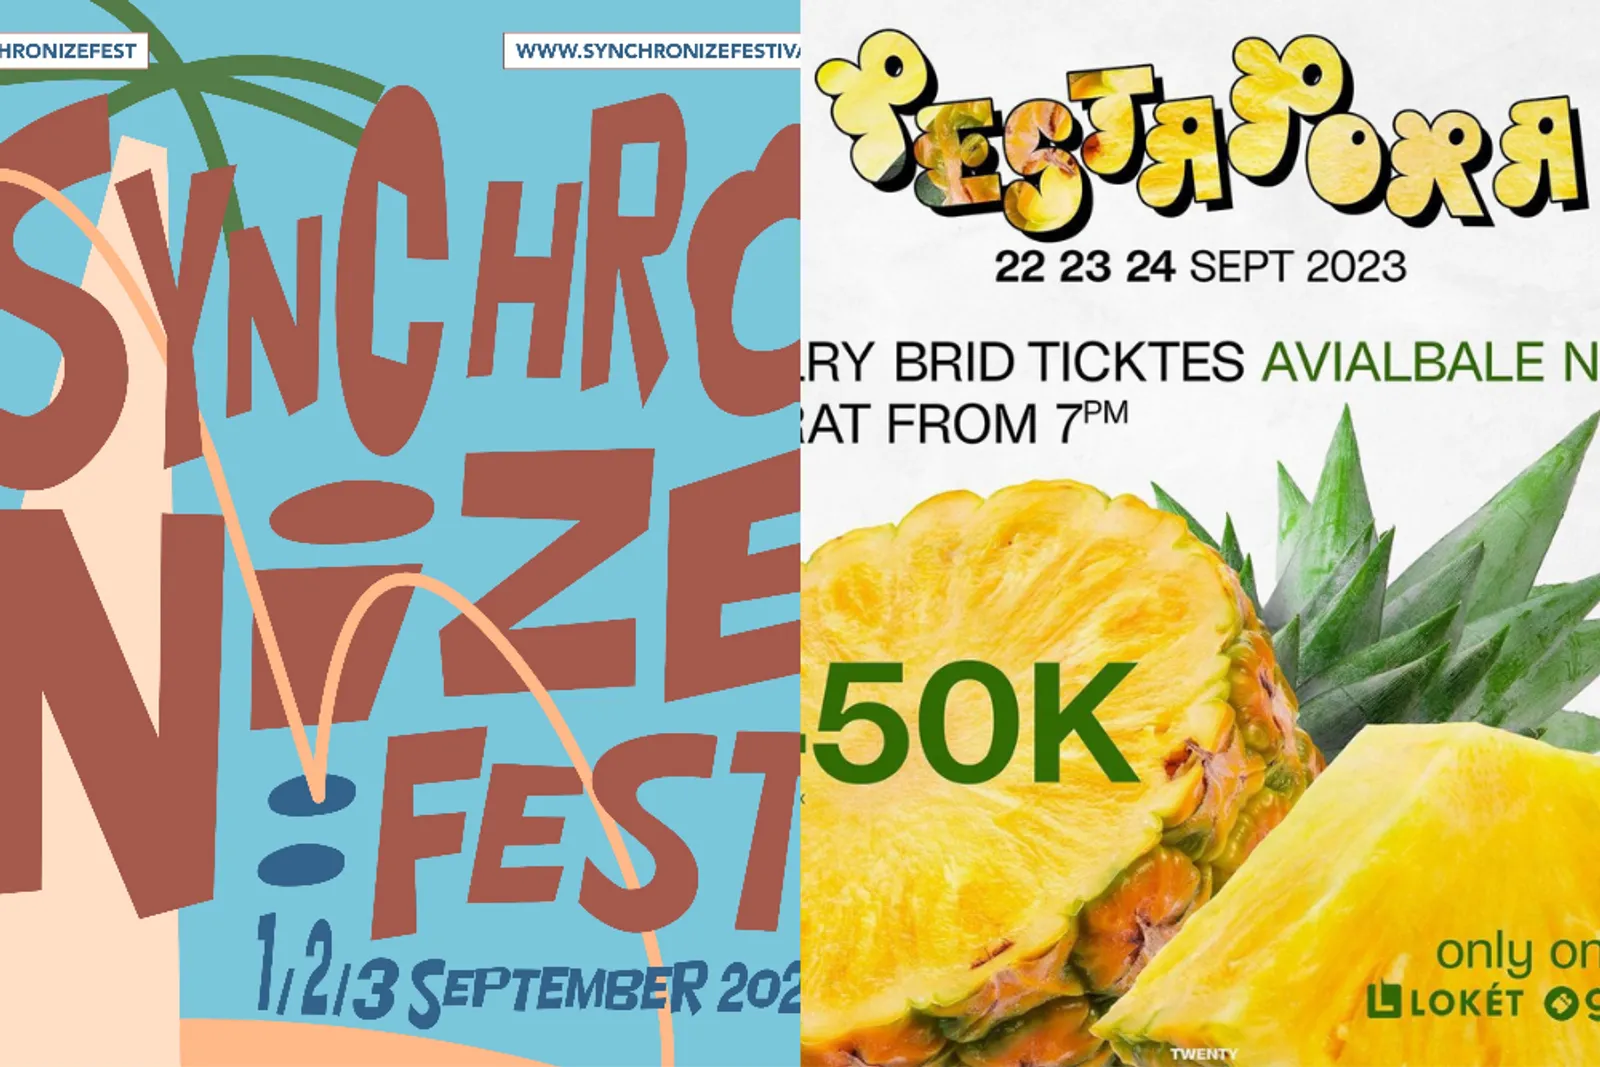 Head-to-Head, Synchronize Fest dan Pestapora Digelar September 2023